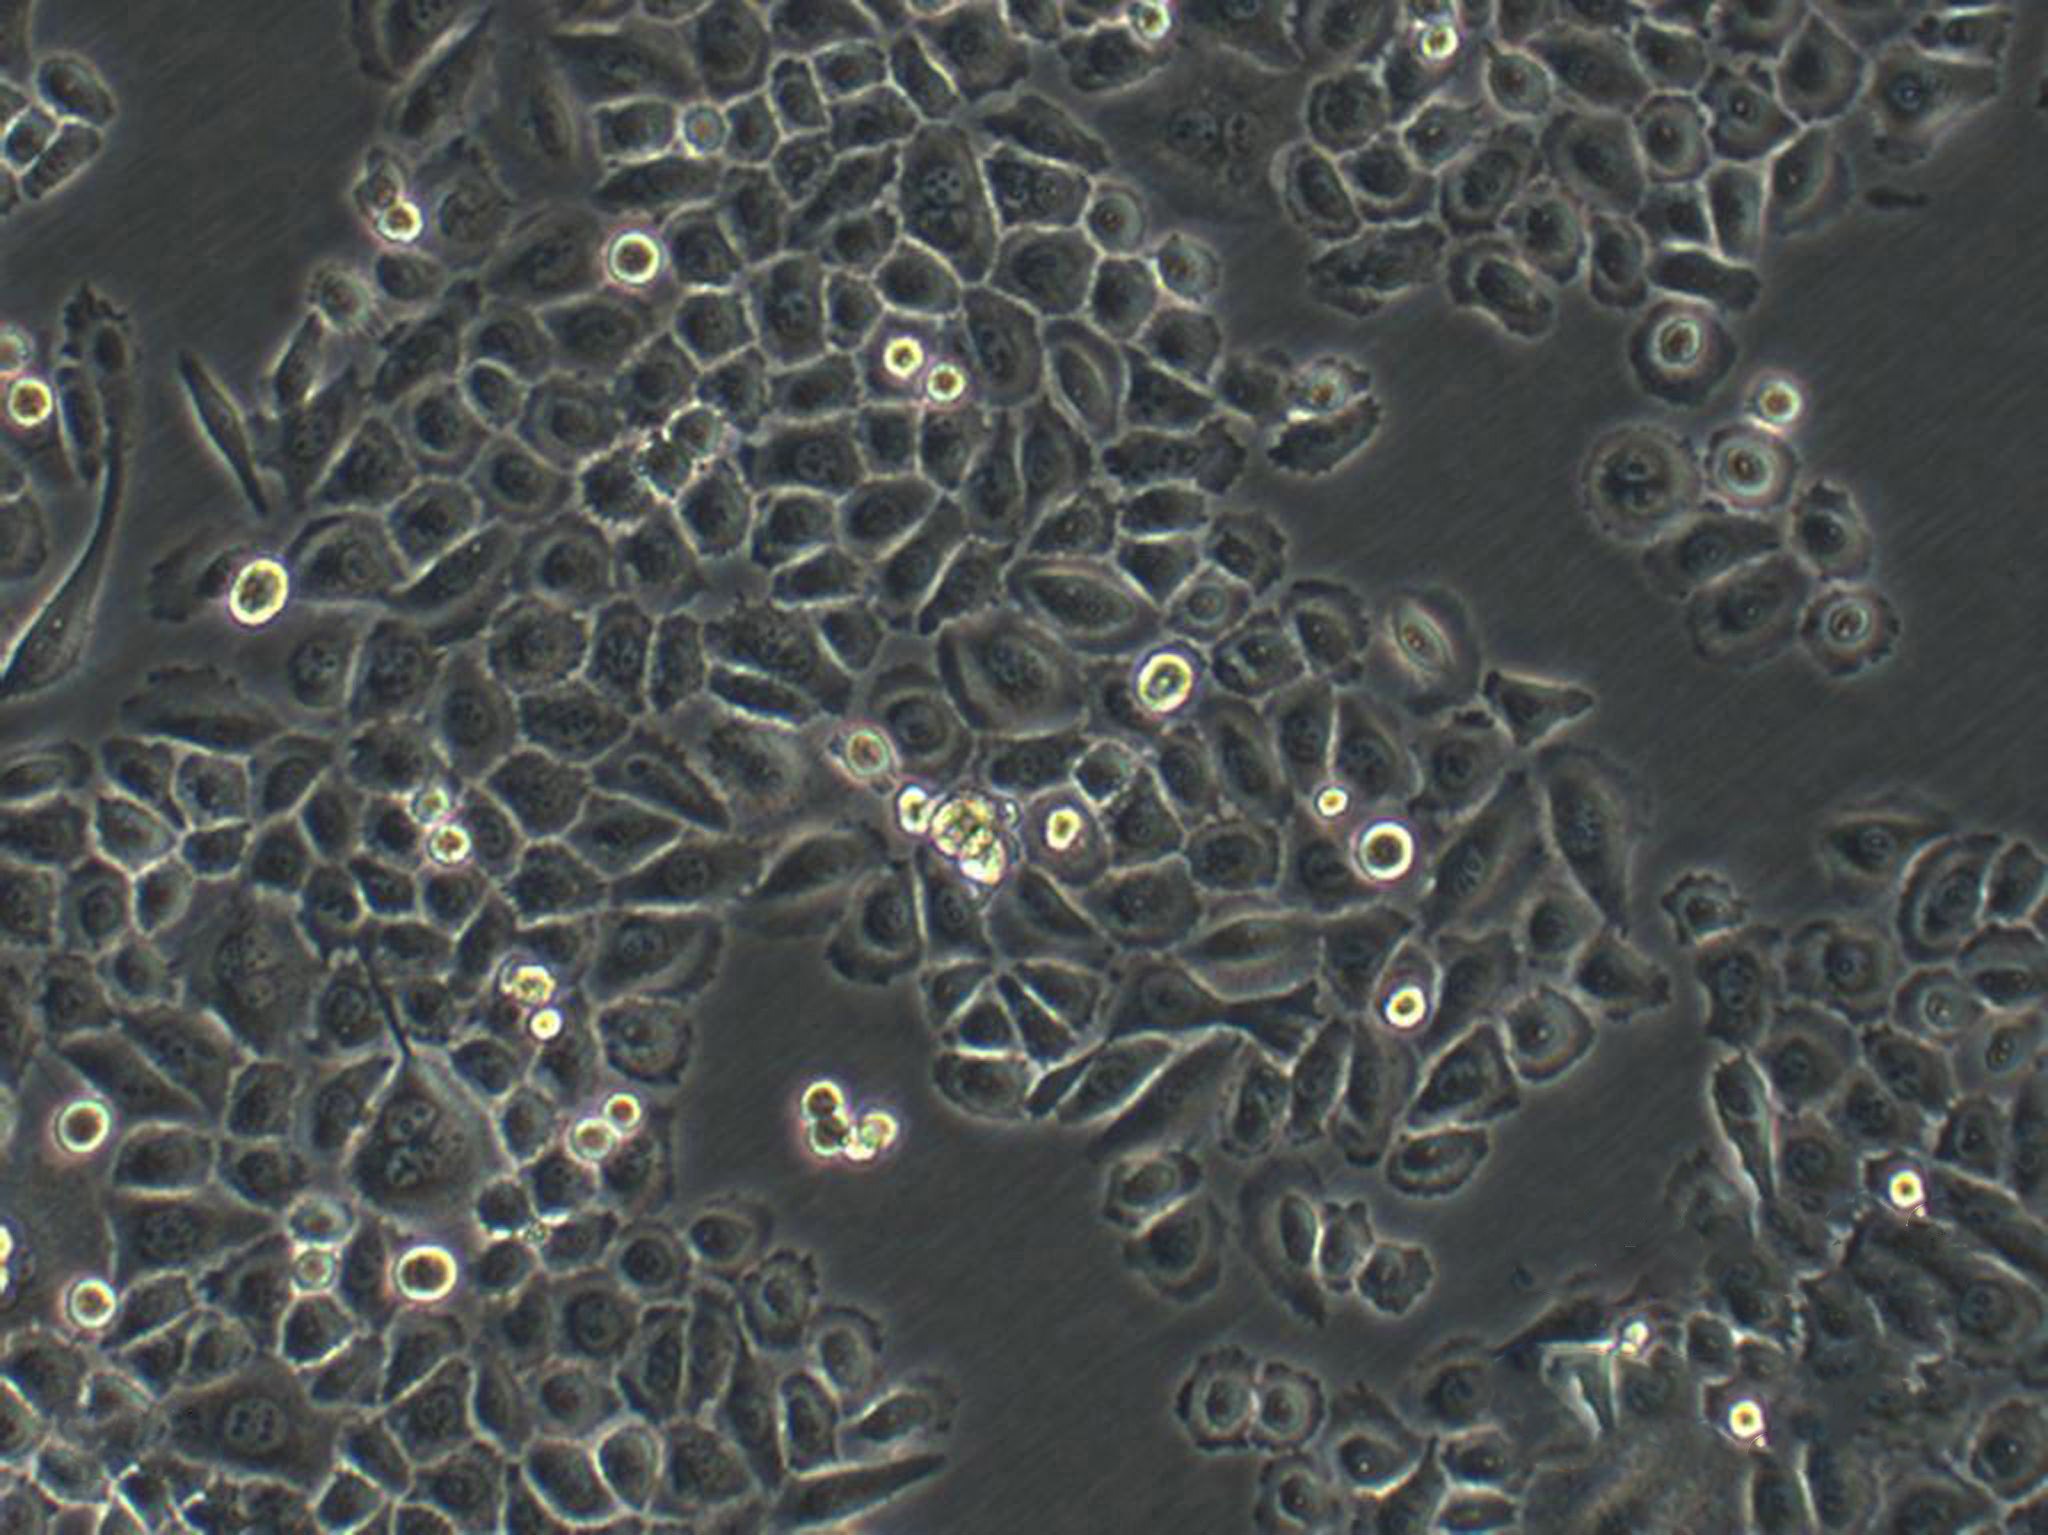 SNU-475 Cells|人肝癌需消化细胞系,SNU-475 Cells